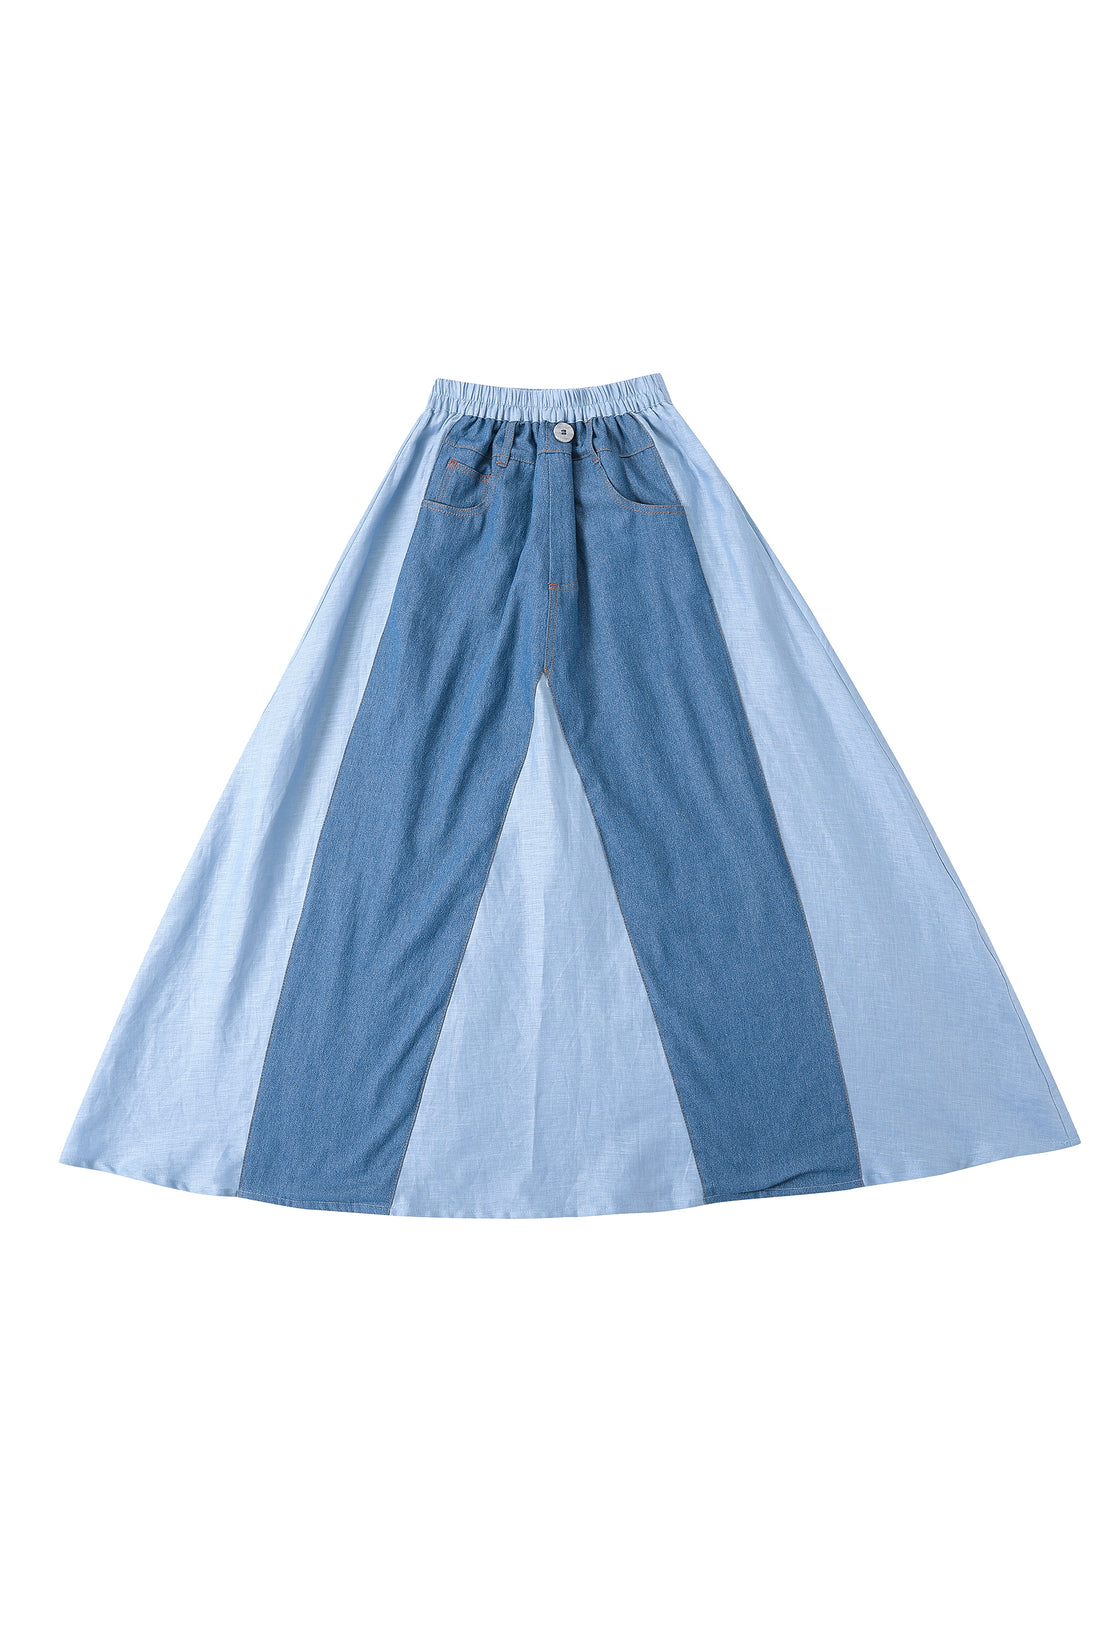 Blue Jeans Skirt